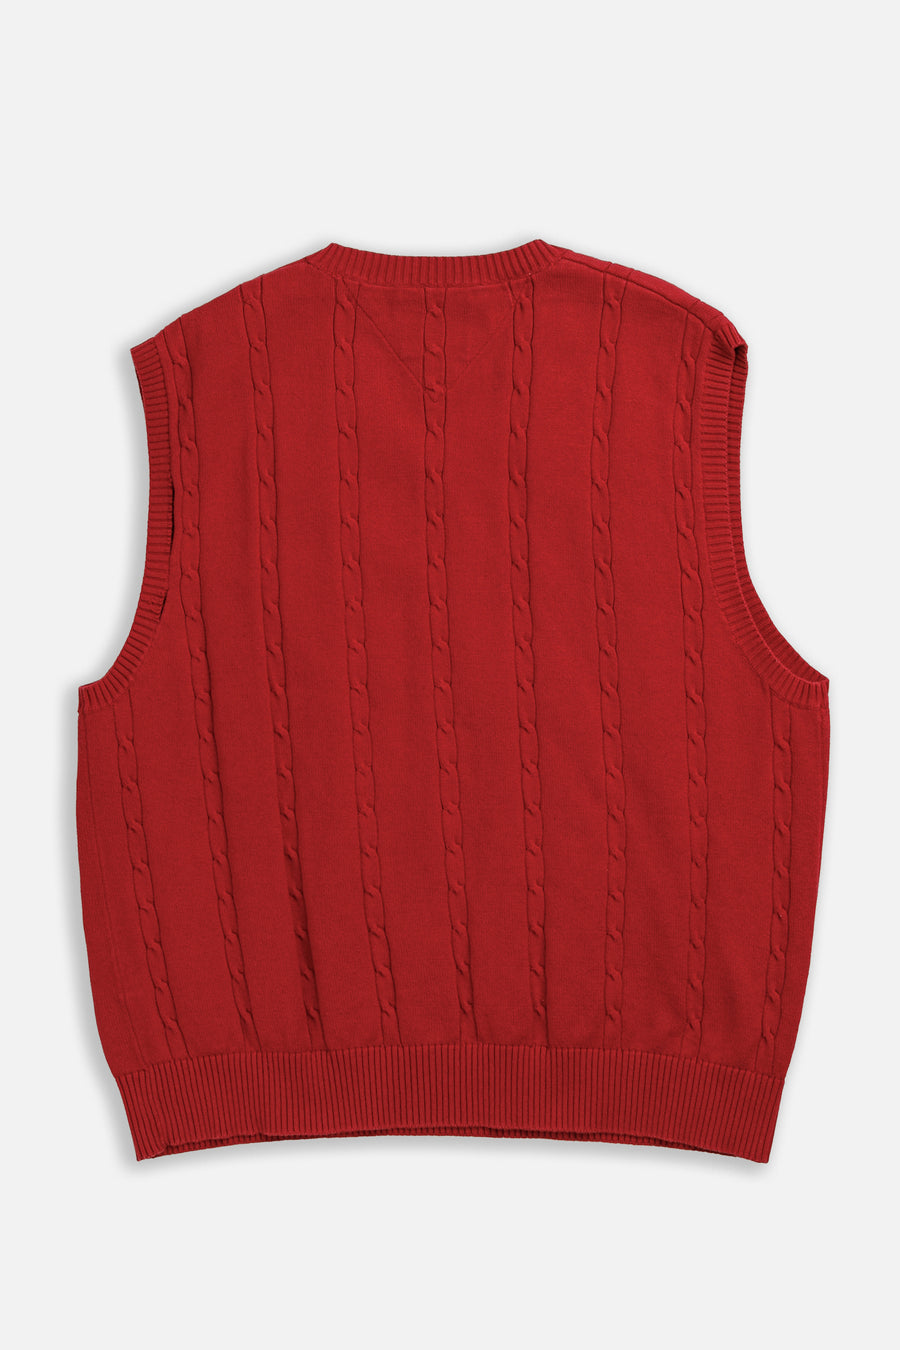 Vintage Tommy Knit Sweater Vest - XL